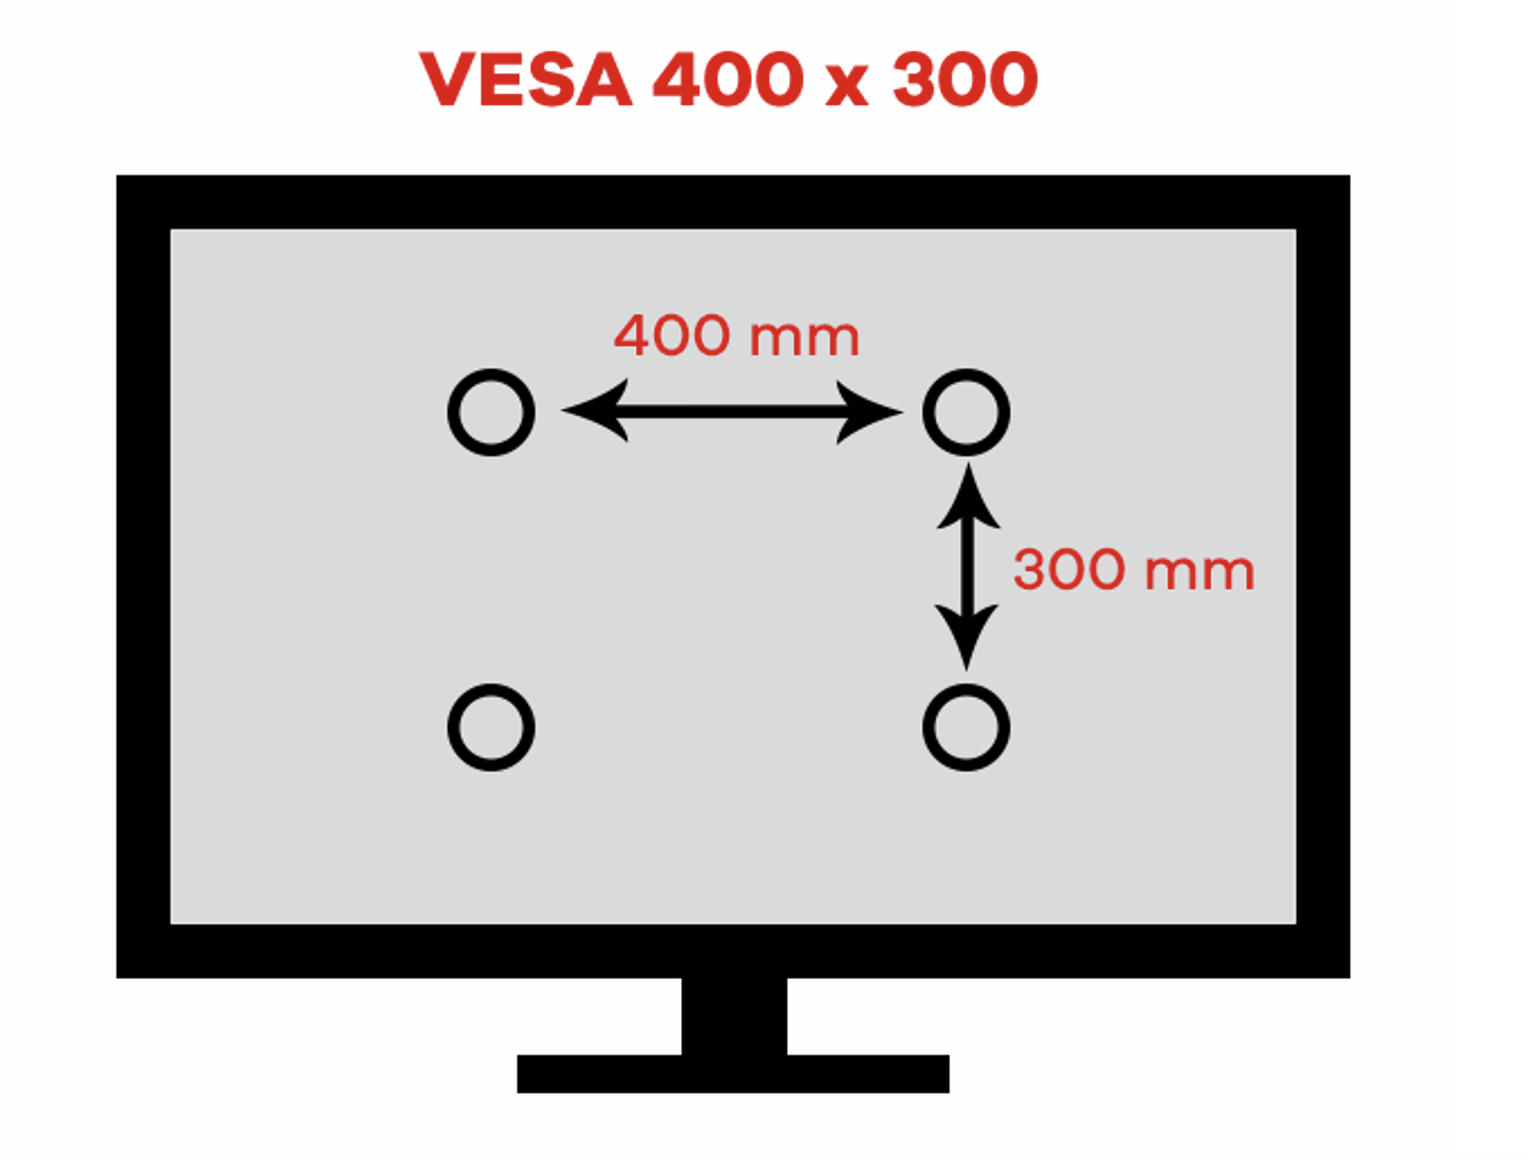 Measuring VESA 